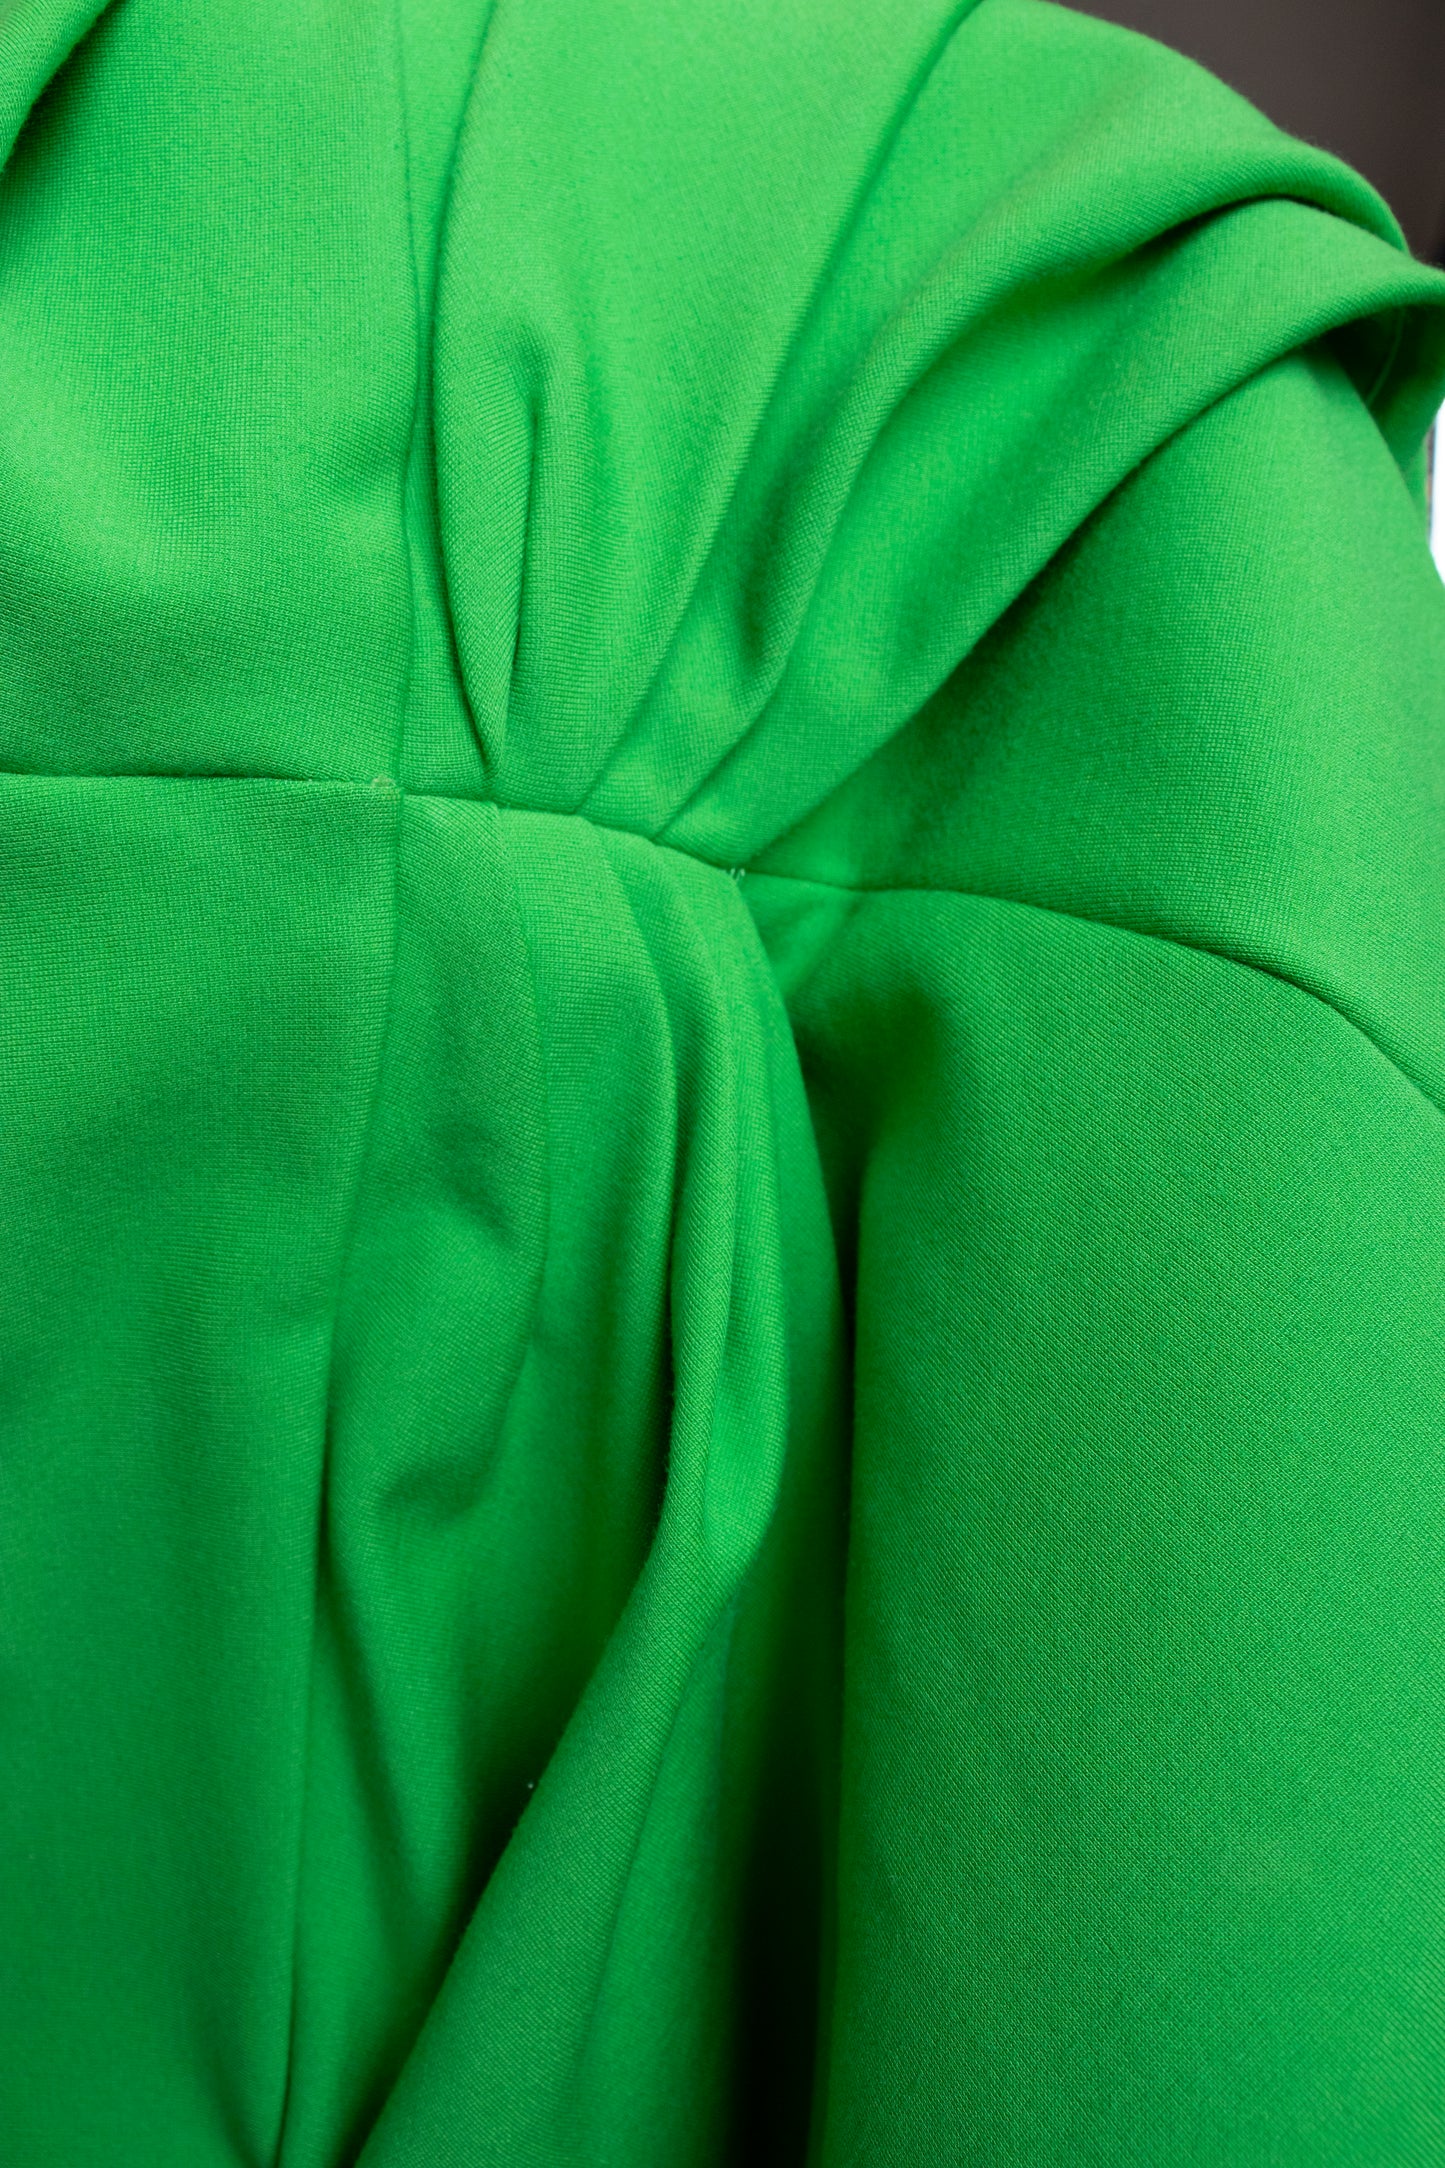 Alexander McQueen Acid Green Bodysuit XXS